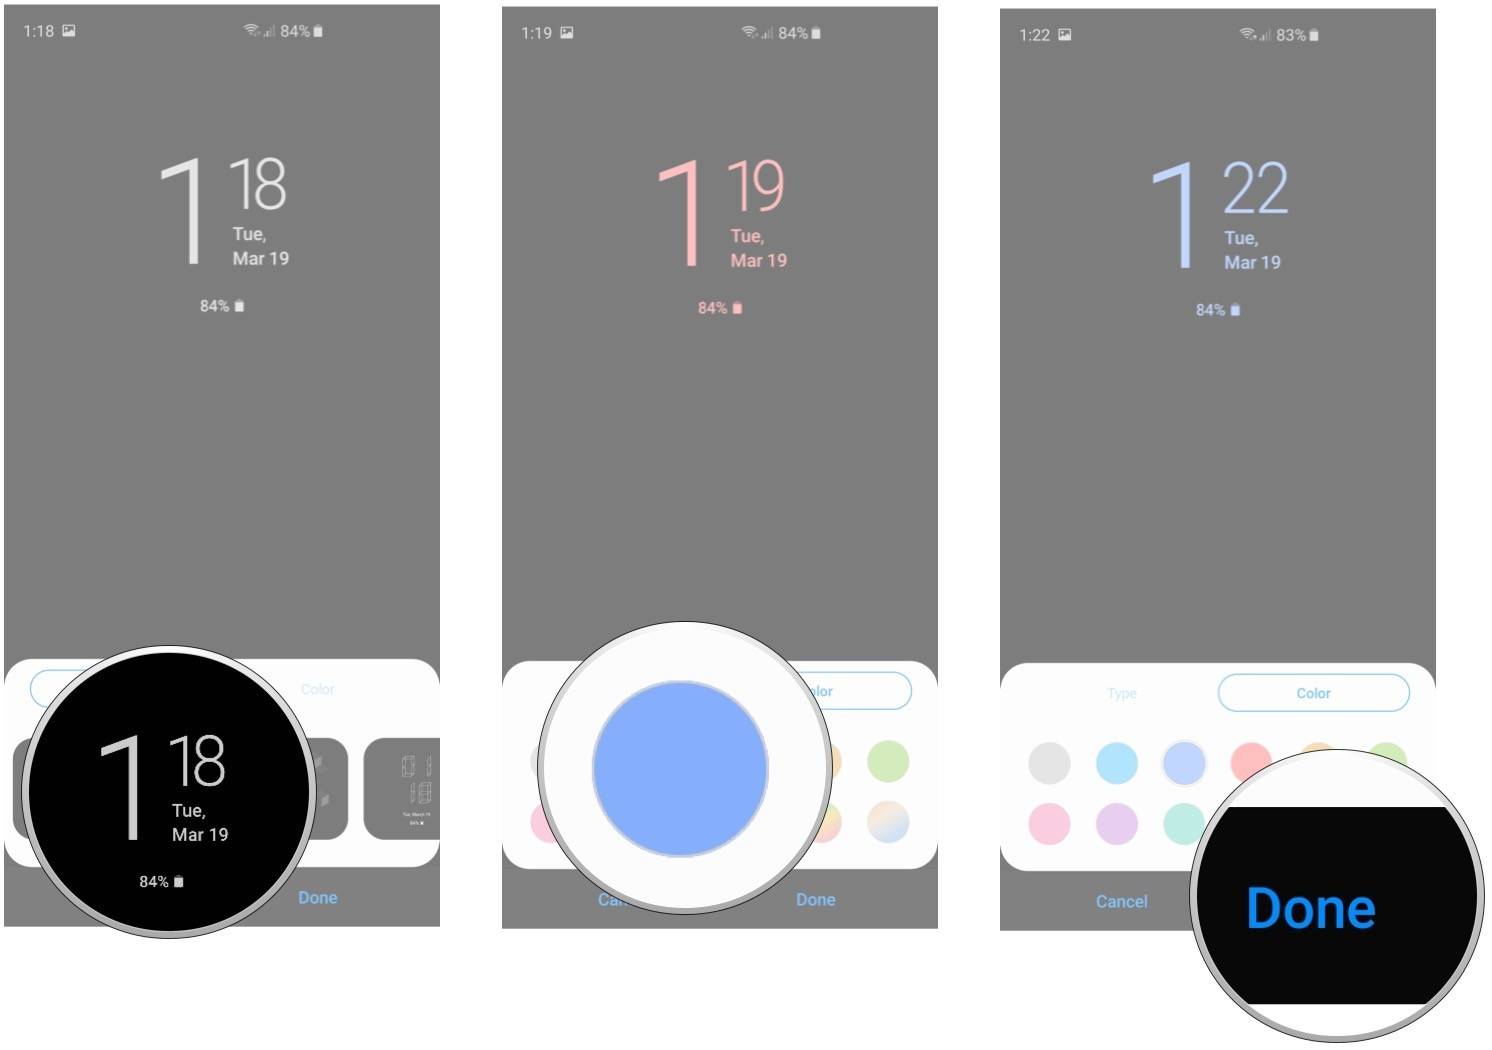 انتخاب استایل ساعت برای desired display mode در گوشی Galaxy S10 سامسونگ,روشتک,raveshtech